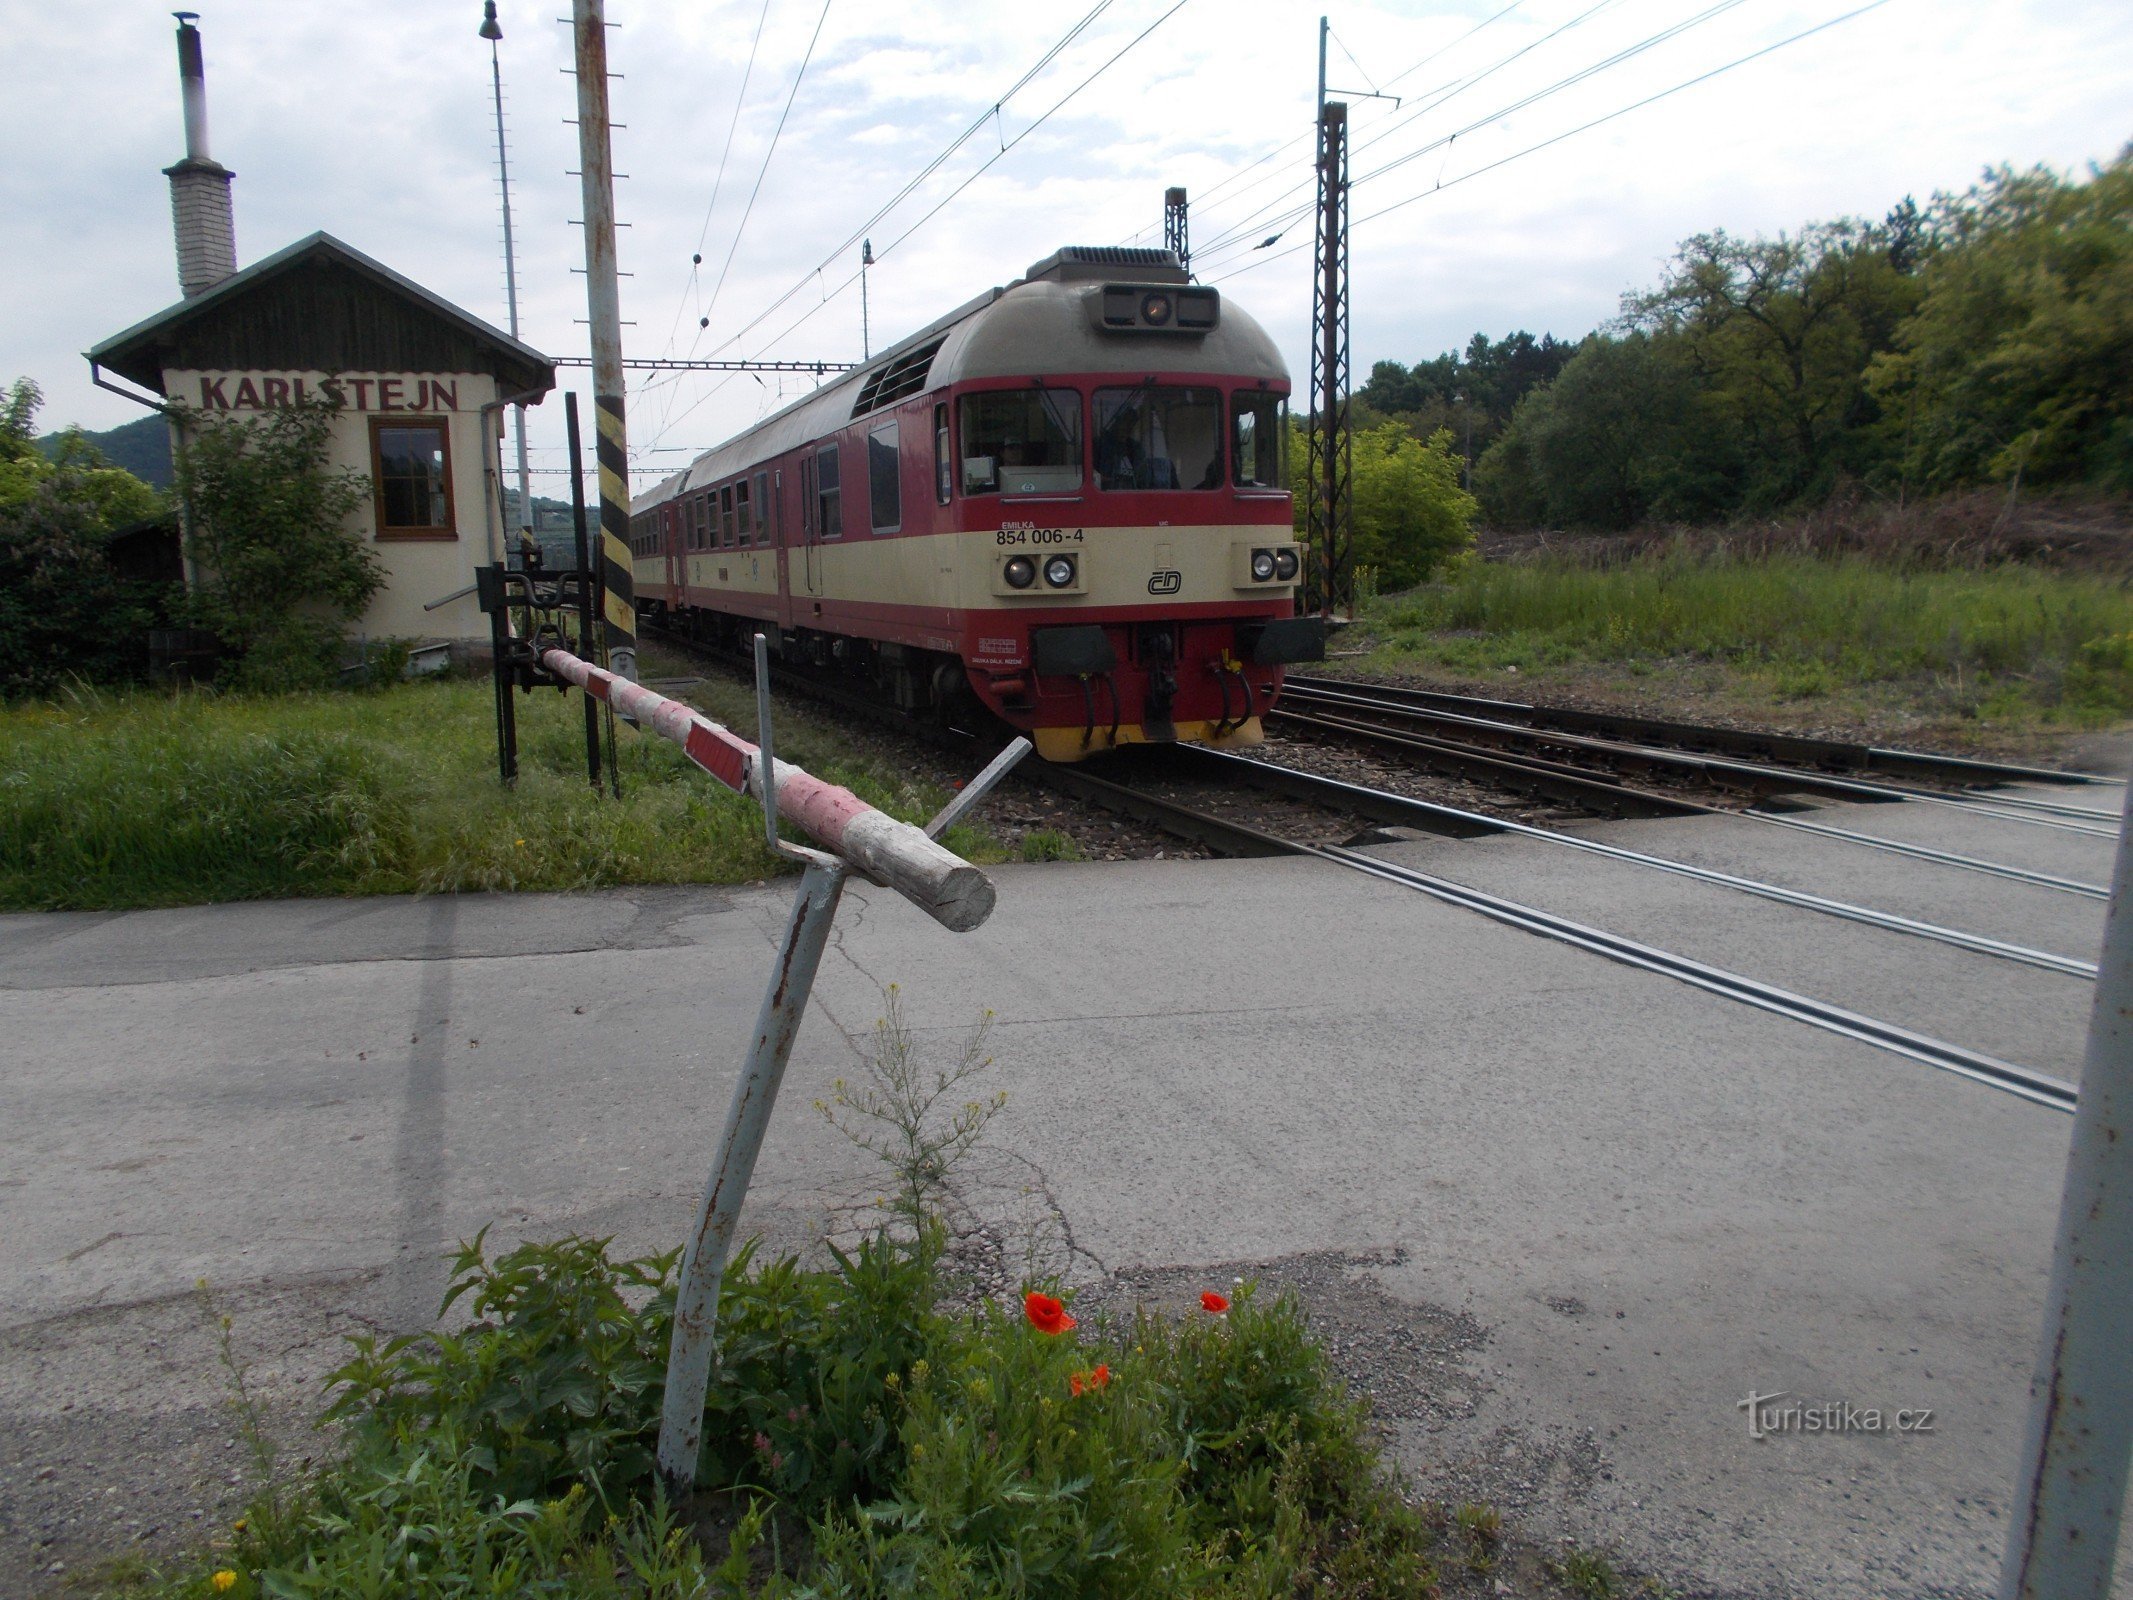 Механічні бар'єри в Карлштейні та потяг до Бероуна.